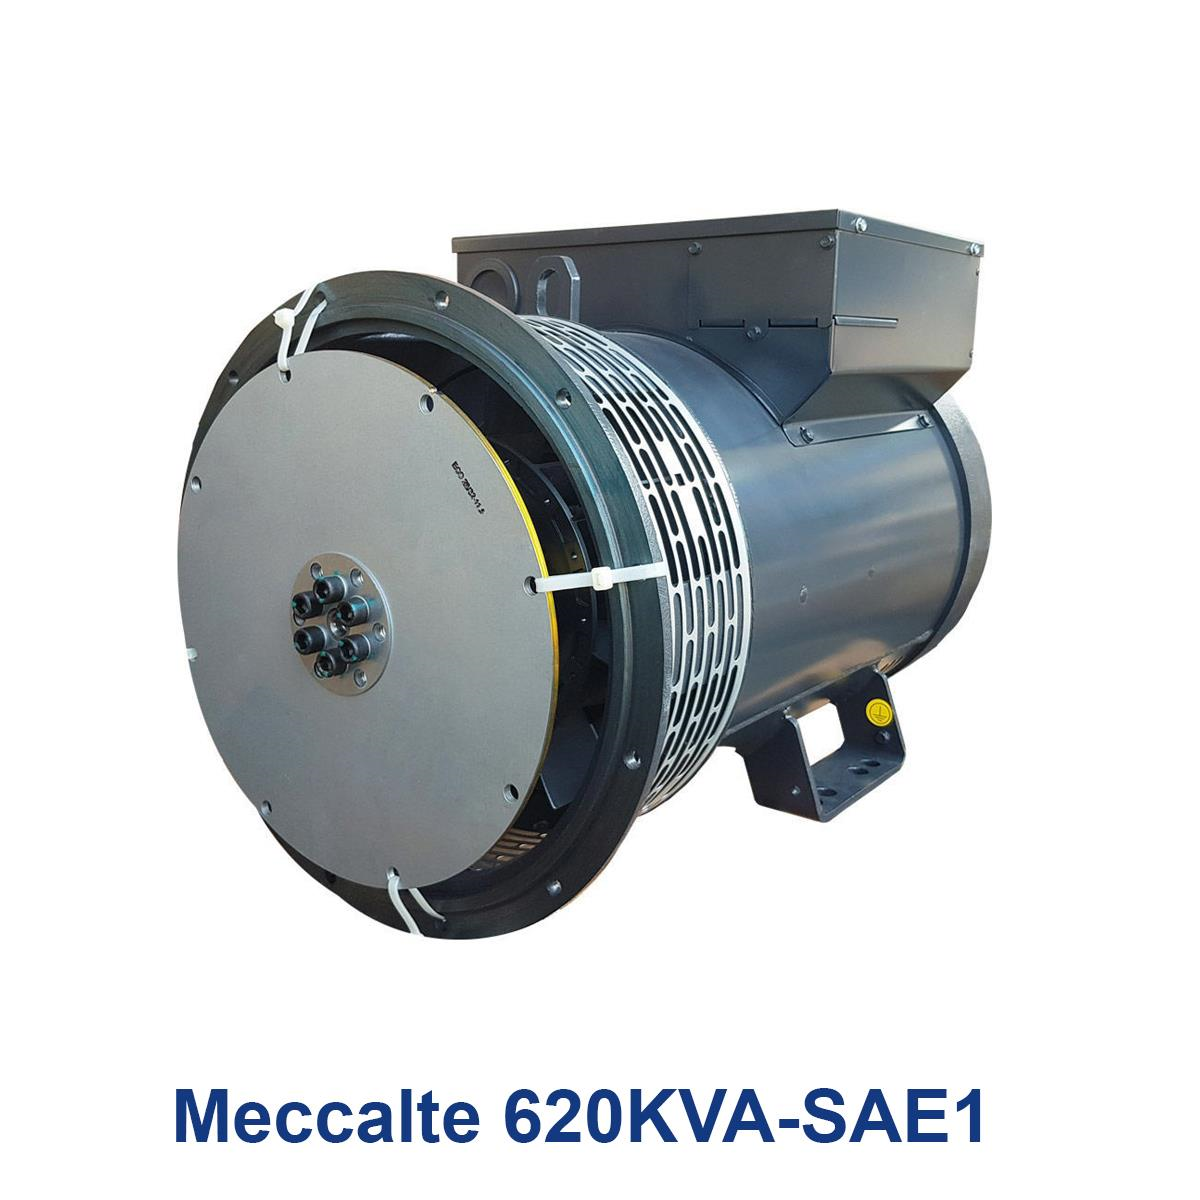 Meccalte-620KVA-SAE1